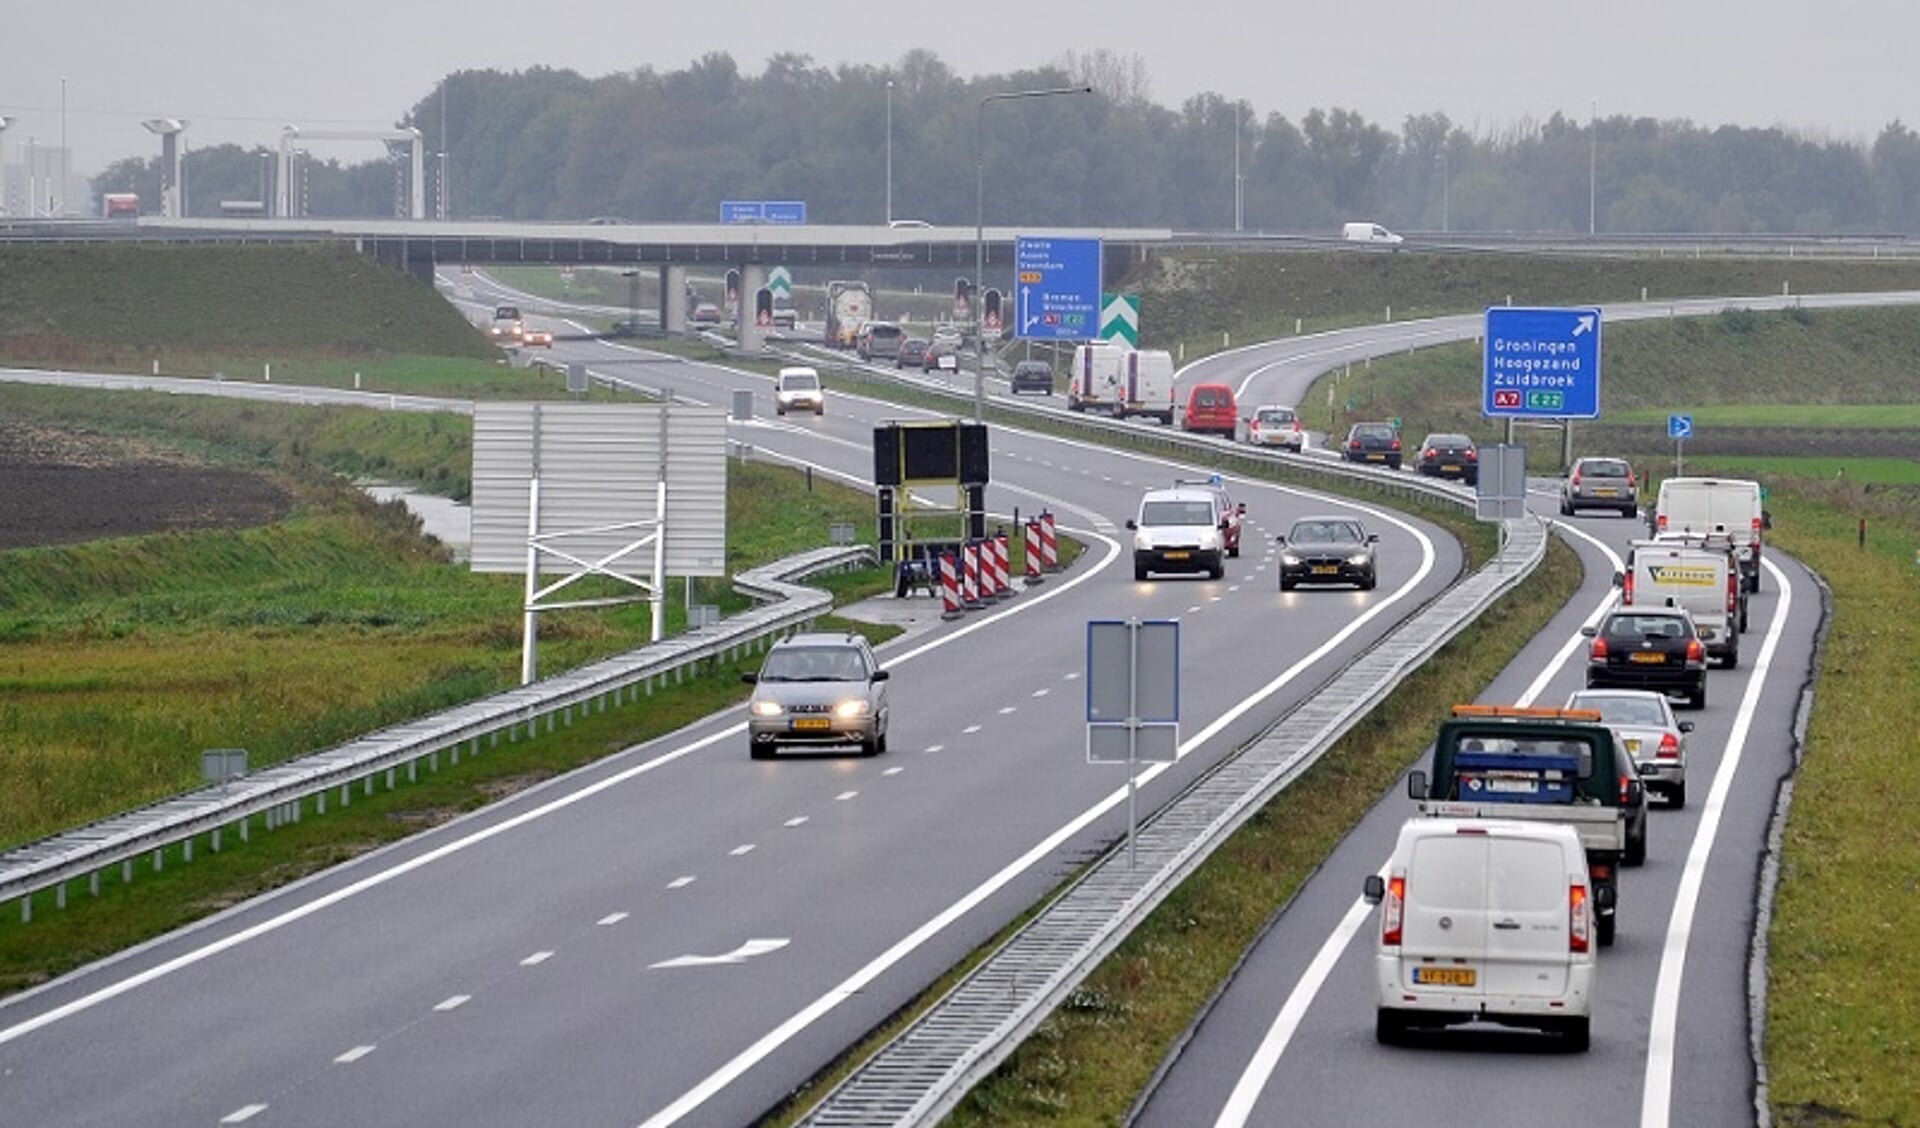 Het gebied rond de A7-N33 heeft volgens het toekomstplan prima ontwikkelmogelijkheden (foto Provincie Groningen).